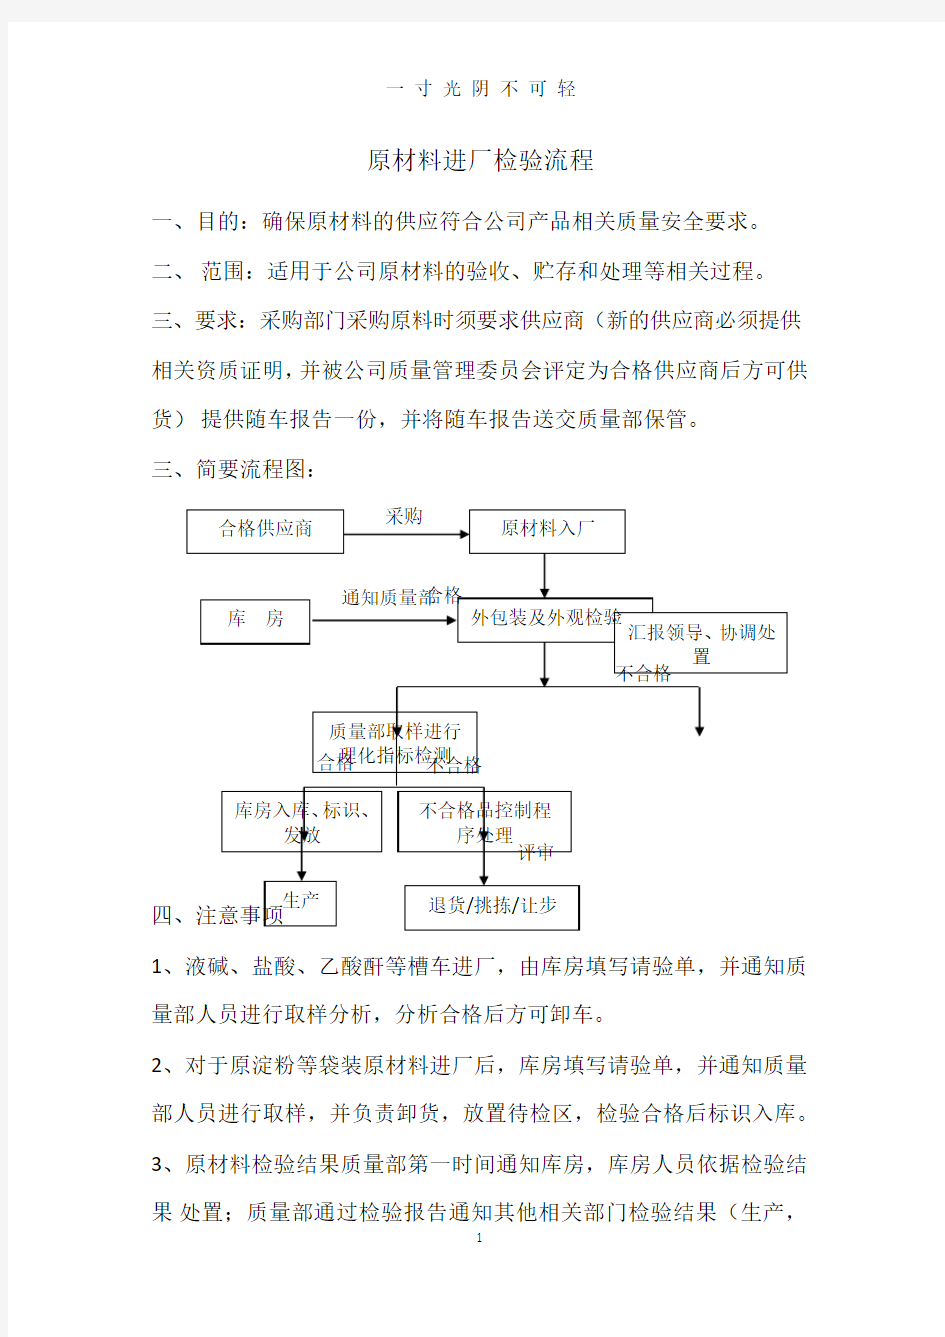 原材料检验流程.pdf